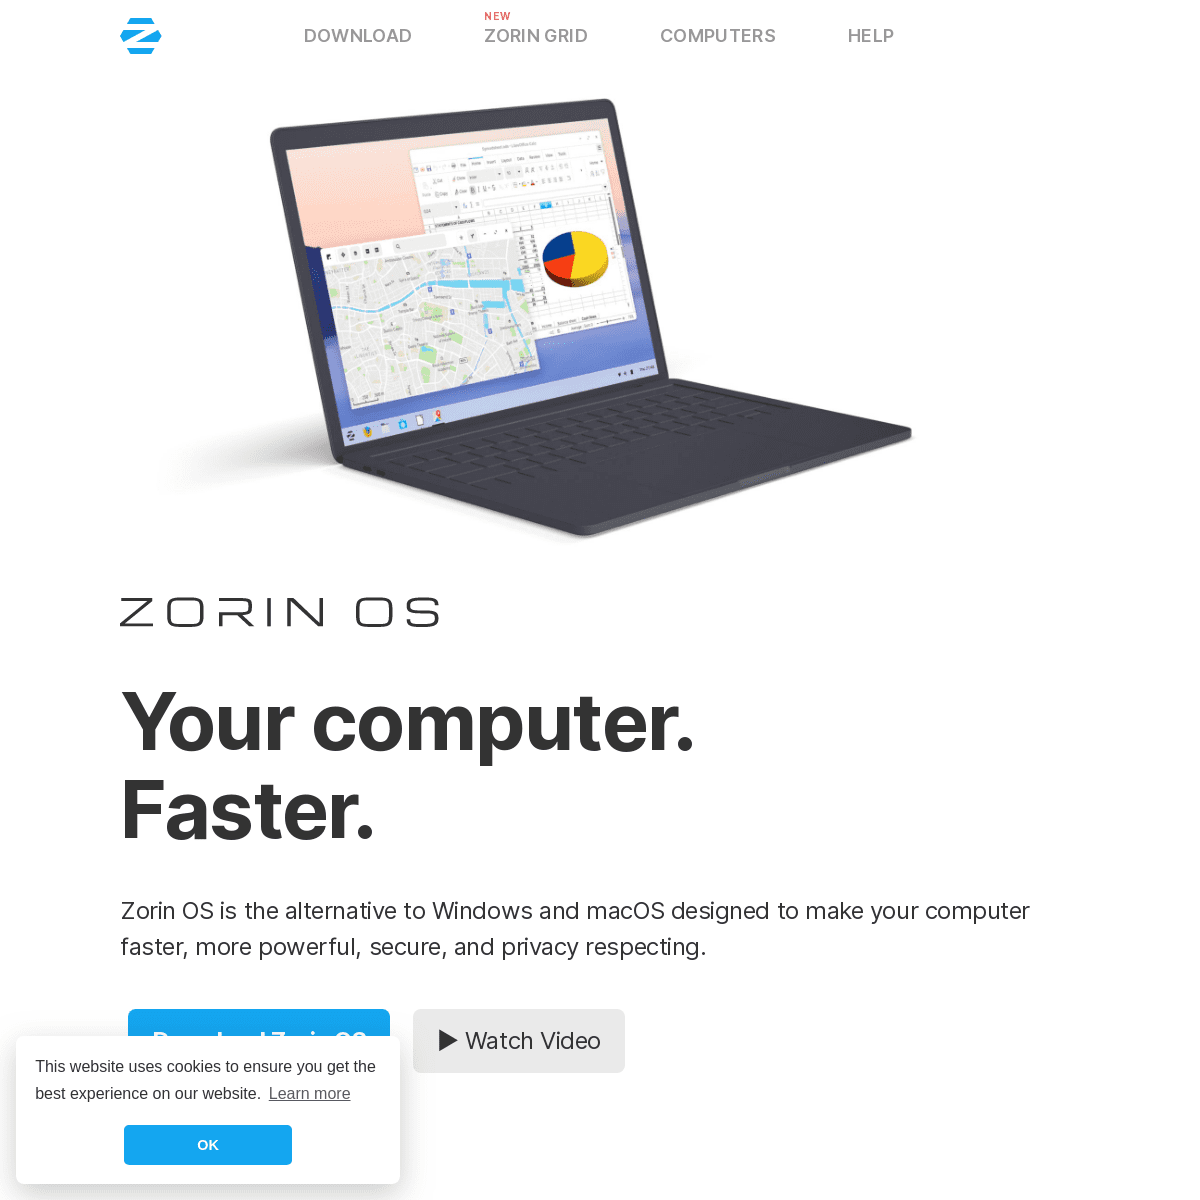 A complete backup of zorinos.com